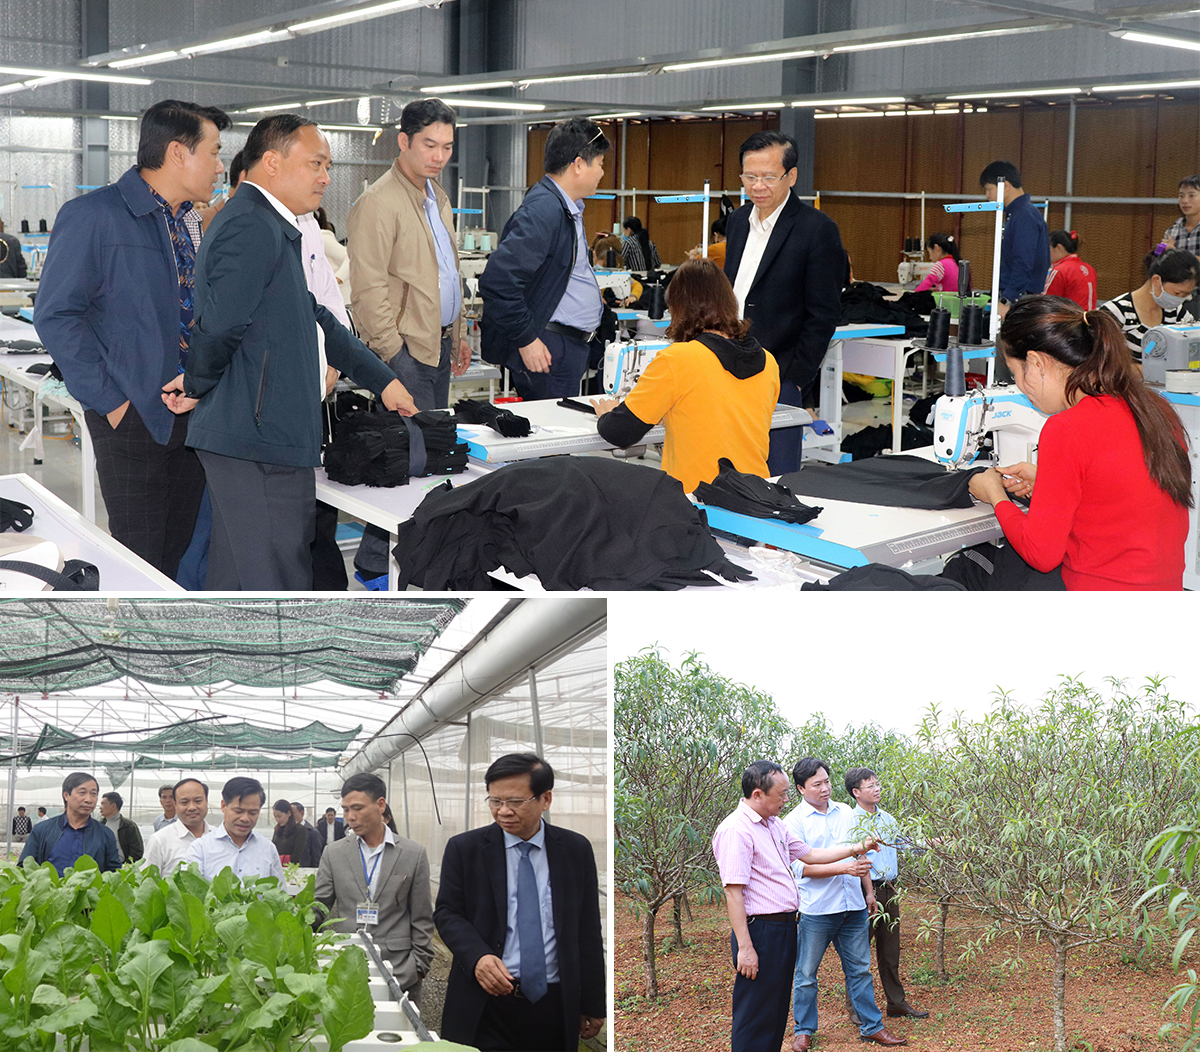 Lãnh đạo huyện Yên Thành thăm nhà máy may ở xã Sơn Thành; mô hình sản xuất rau, quả công nghệ cao trong nhà lưới ở xã Tân Thành và khảo sát hiệu quả trồng đào phai tại xã Kim Thành.